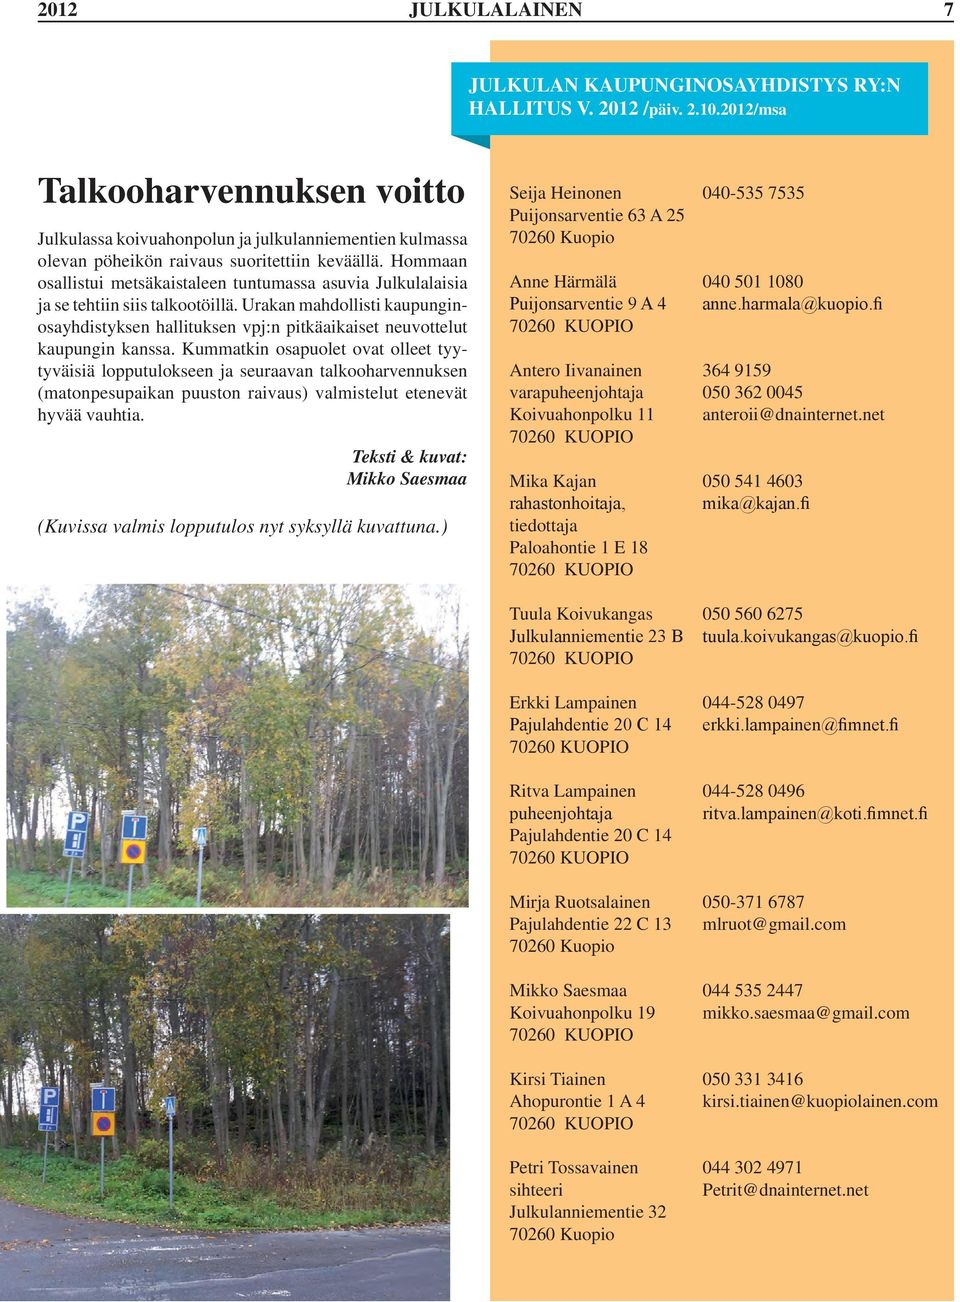 Hommaan osallistui metsäkaistaleen tuntumassa asuvia Julkulalaisia ja se tehtiin siis talkootöillä.